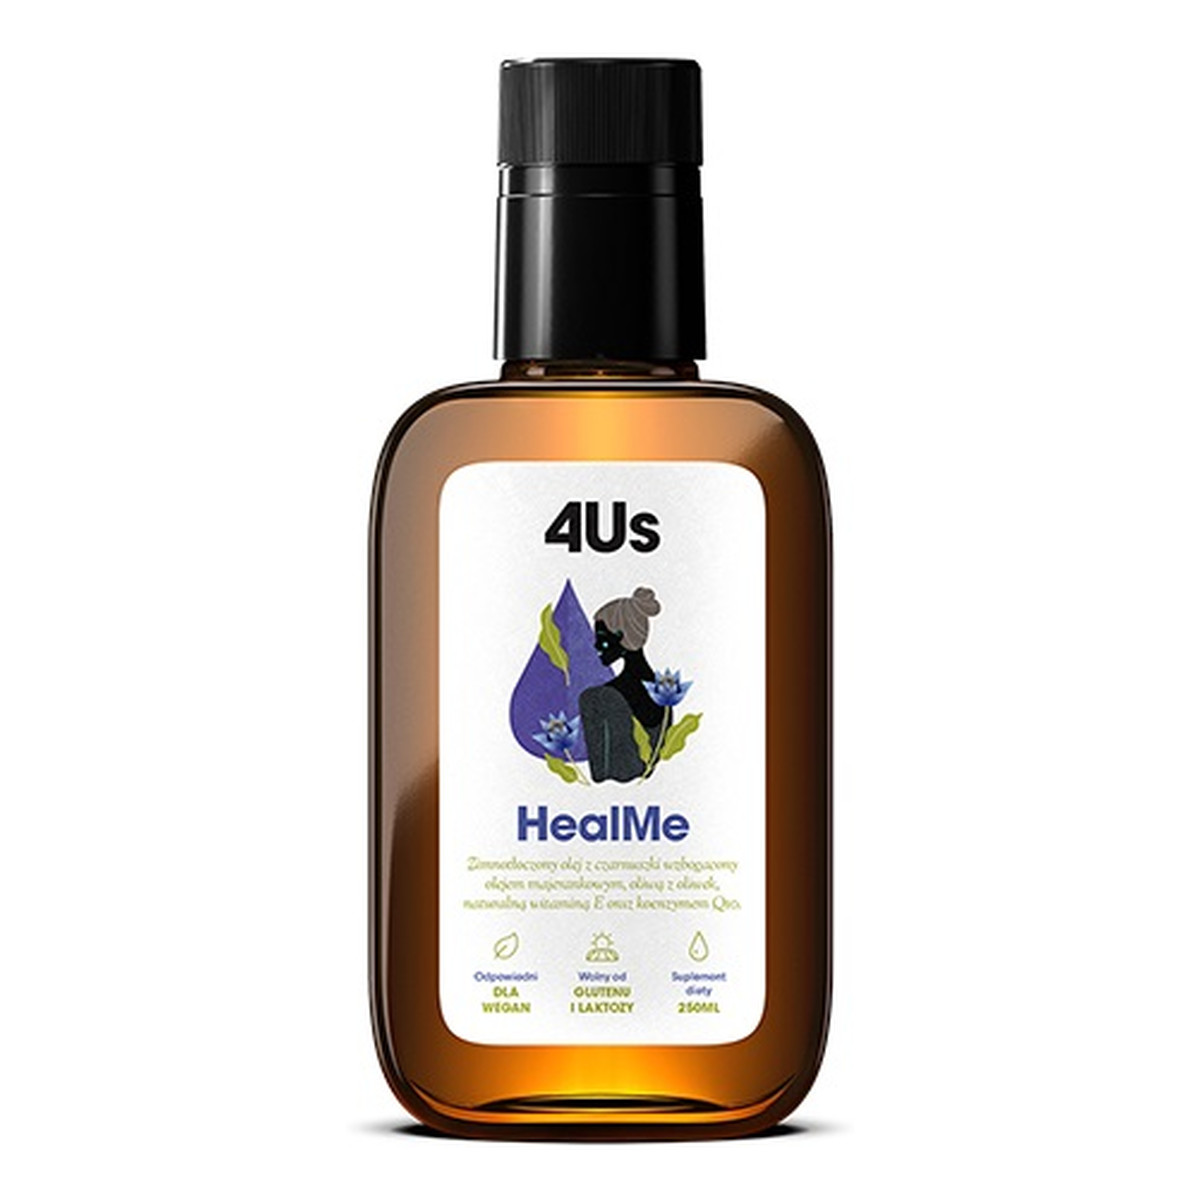 HealthLabs 4us healme zimnotłoczony olej z czarnuszki suplement diety 250ml